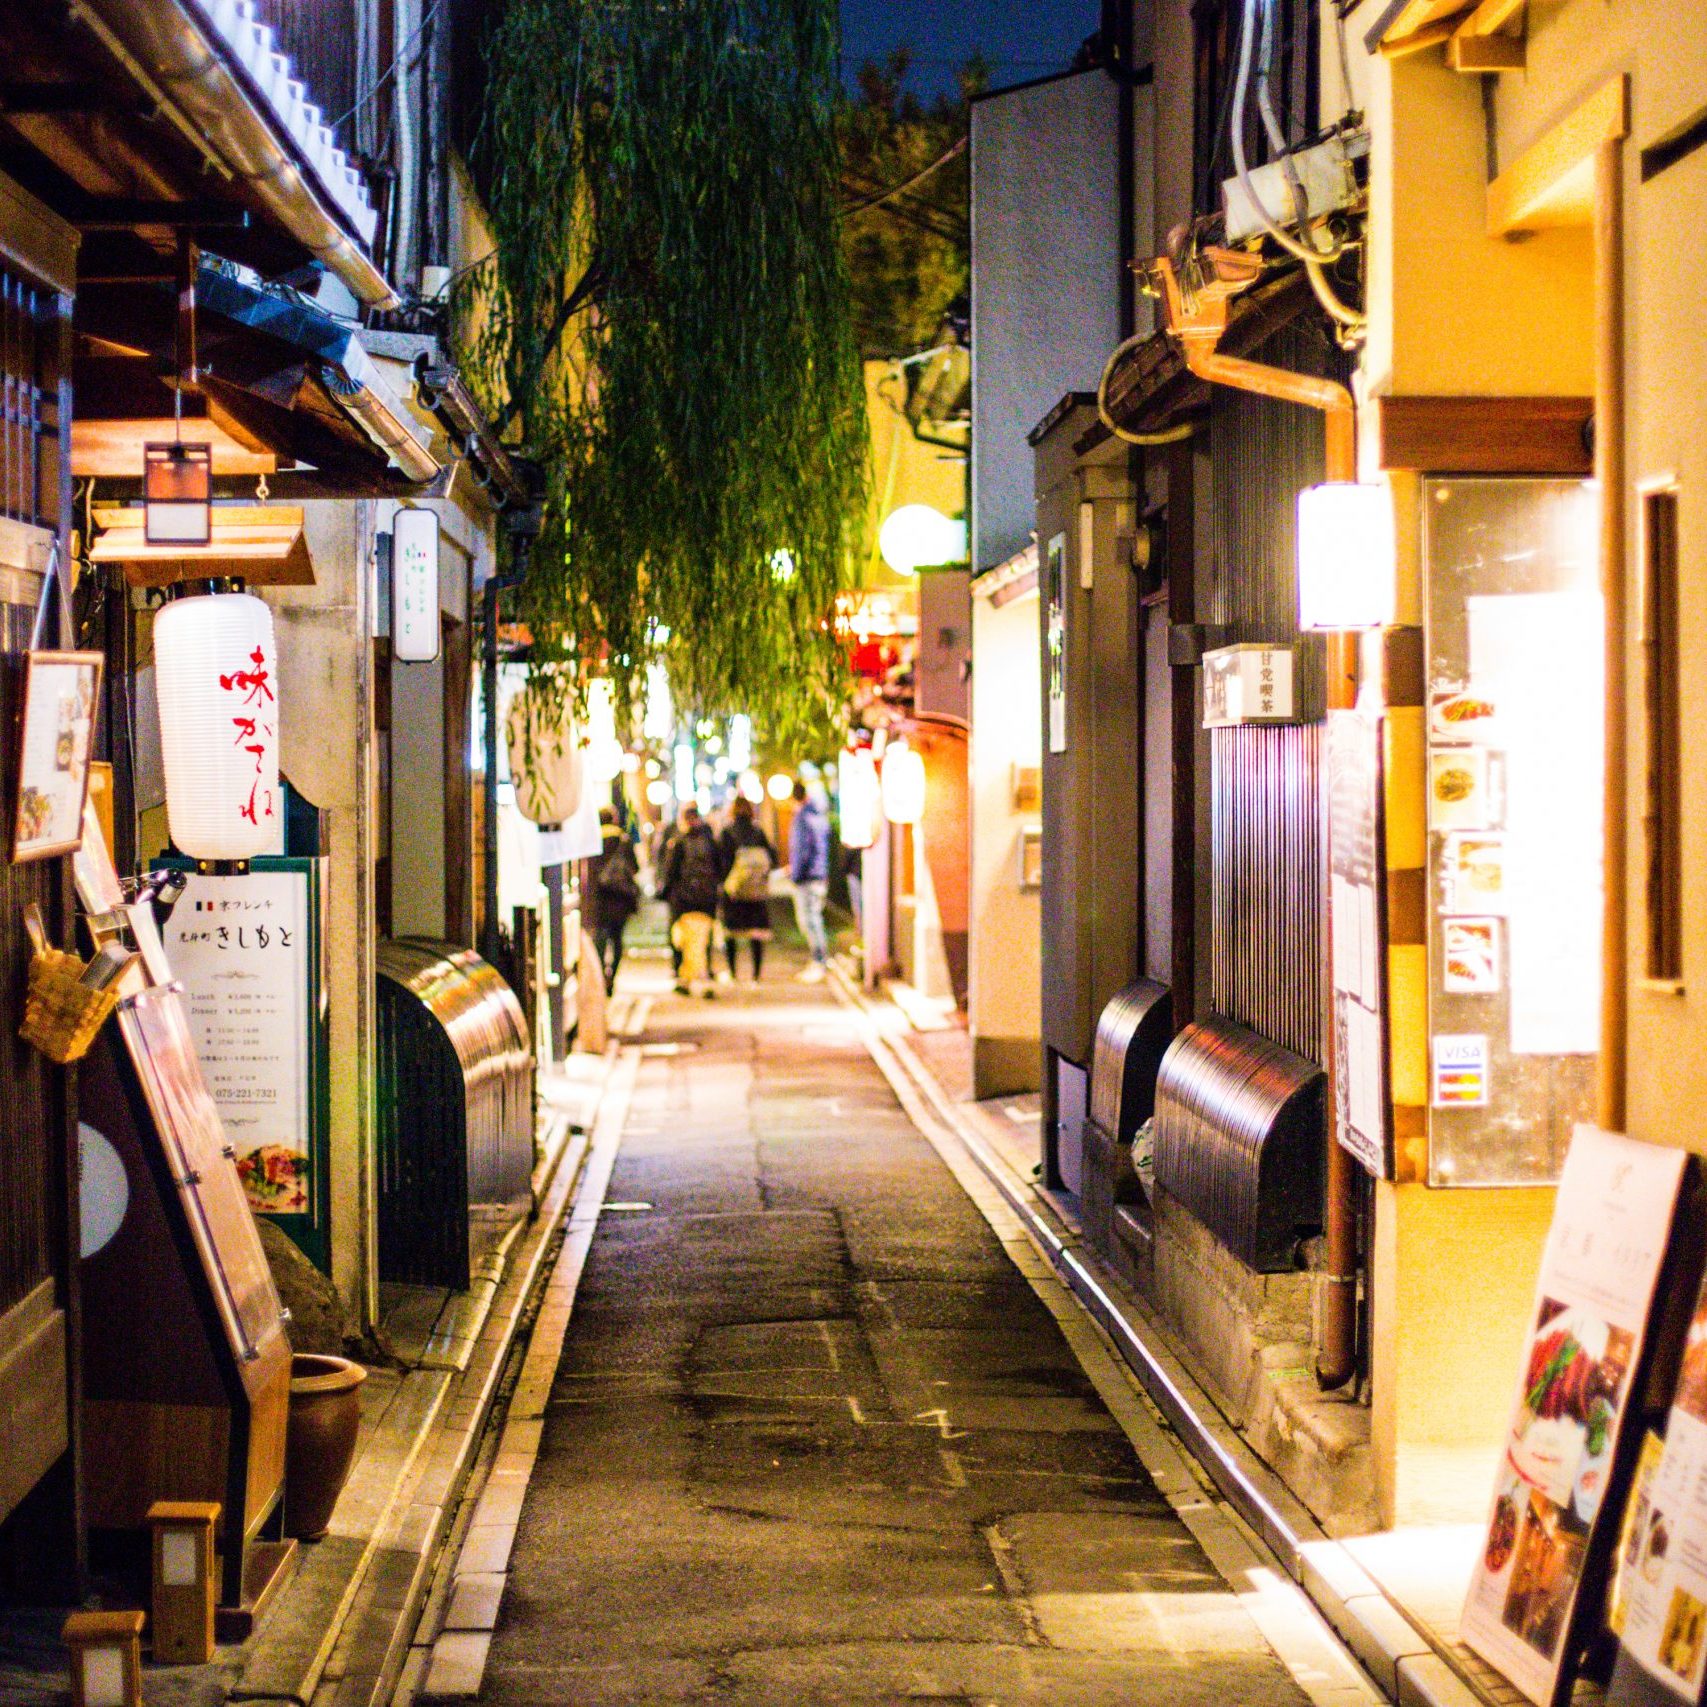 Pontocho alley at night, local Japanese pub and bars, Kyoto, Japan